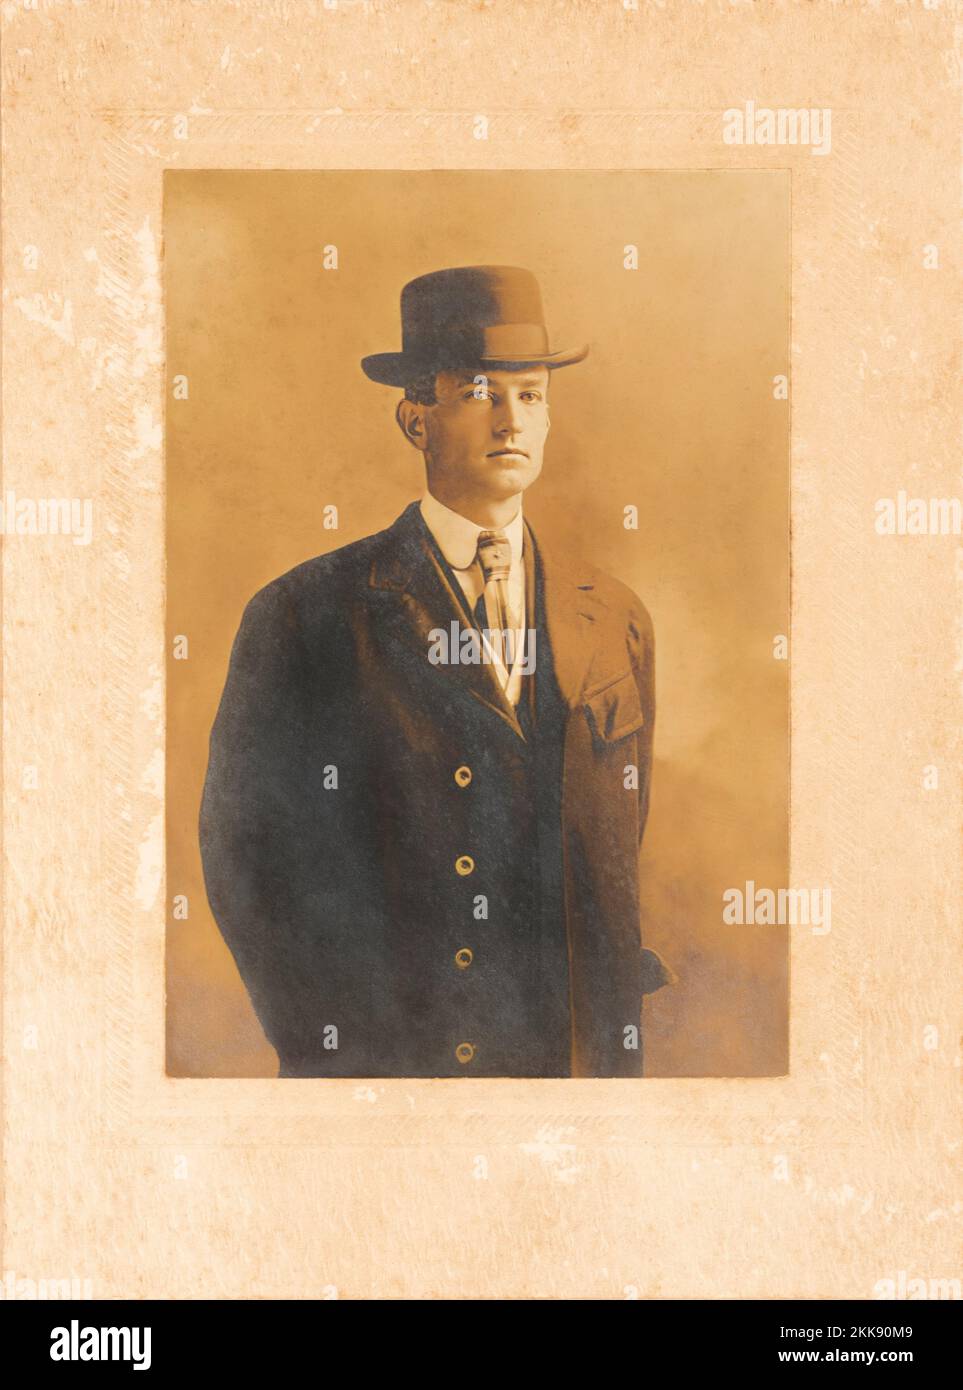 Antigua foto de tono sepia de un hombre joven de aspecto distinguido con traje y sombrero. Foto de stock